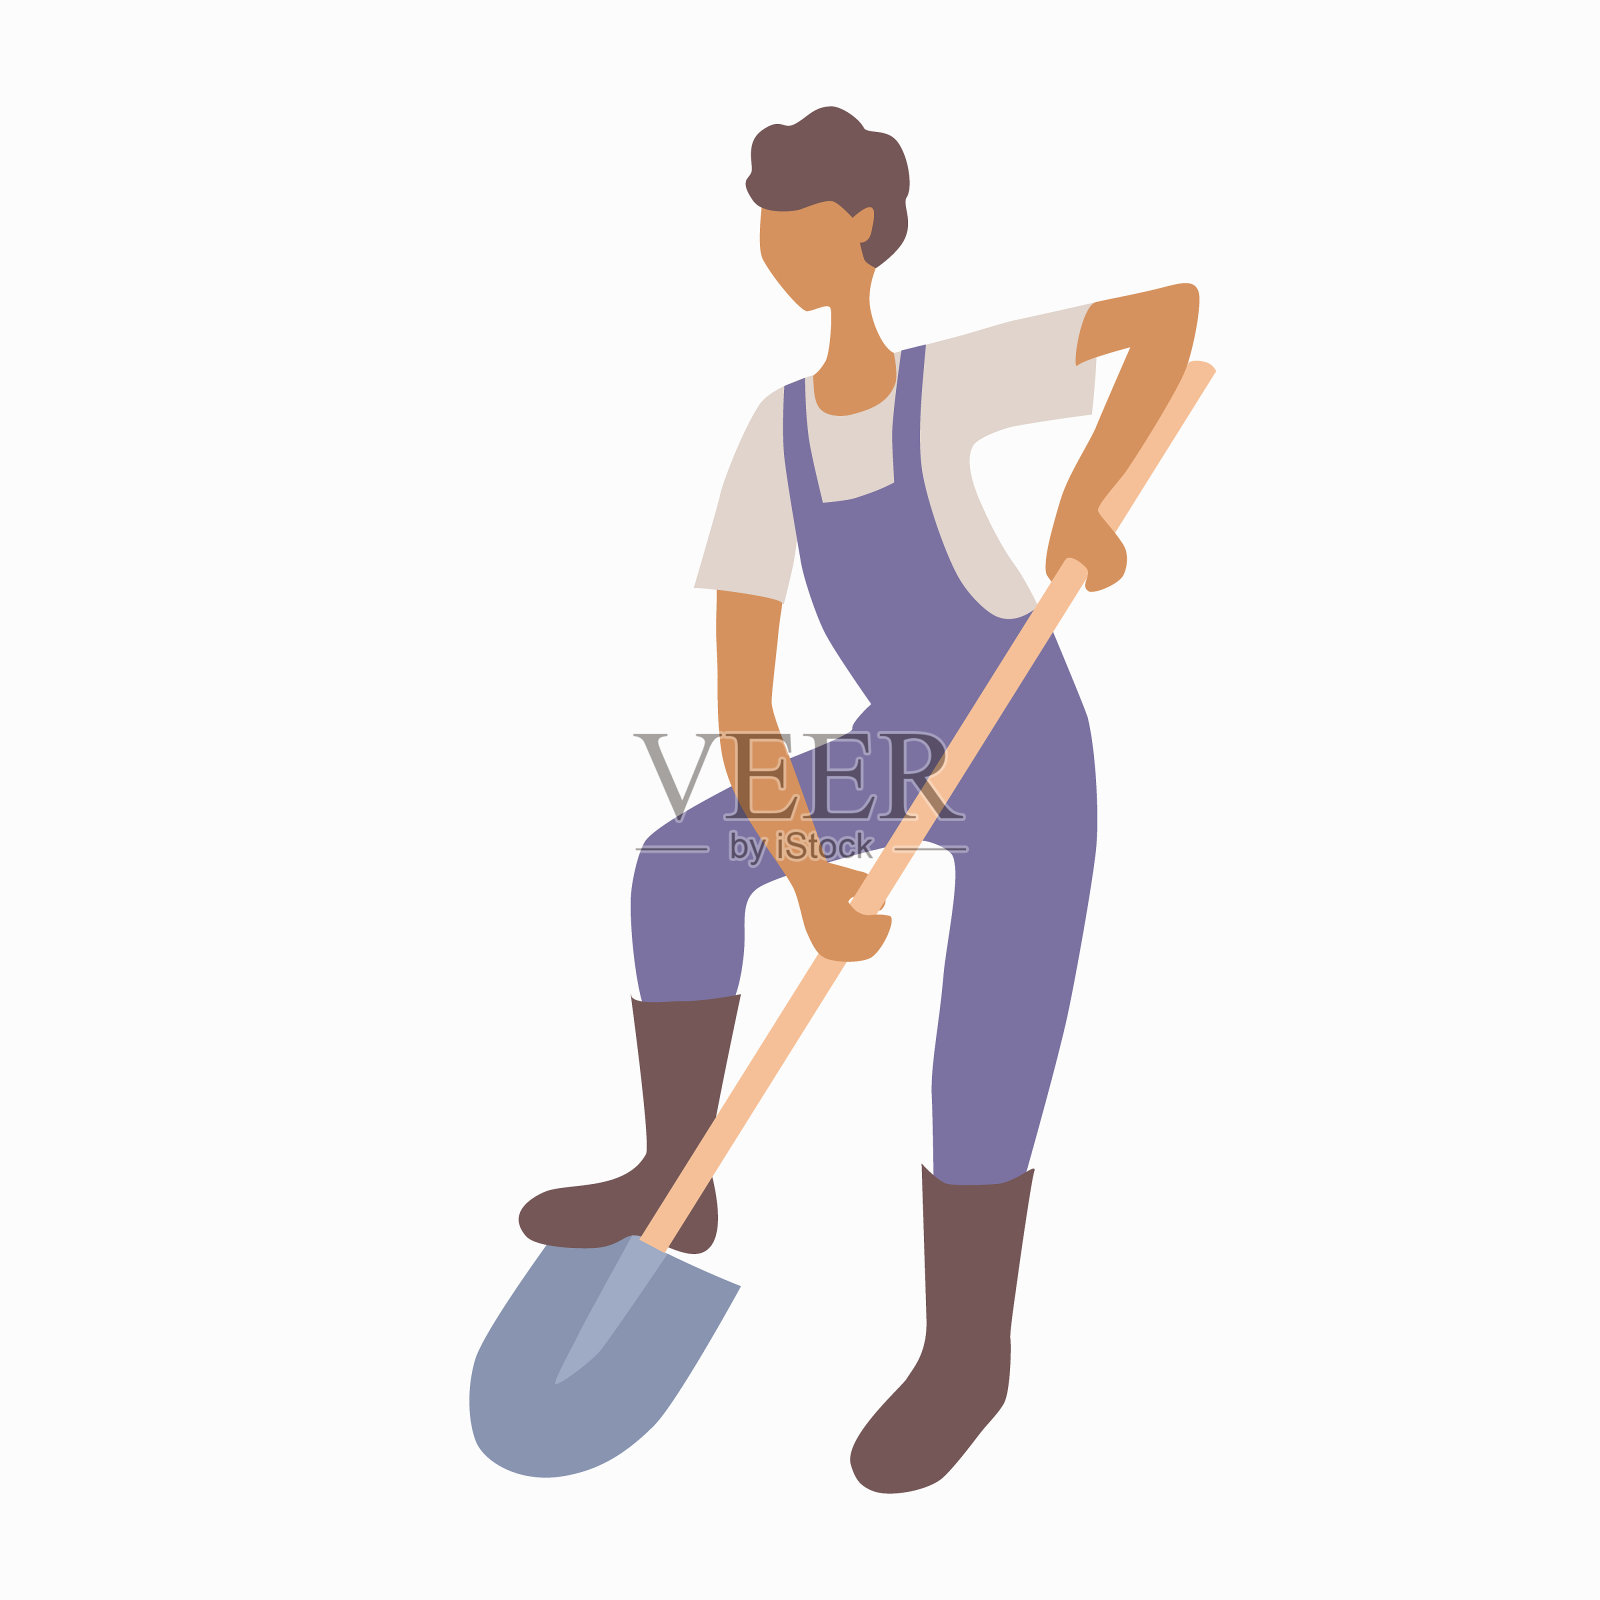 穿着工装裤和靴子的年轻人用铲子挖地。工人或园丁。土壤耕作。业余爱好或生意种植蔬菜或水果。设计元素图片